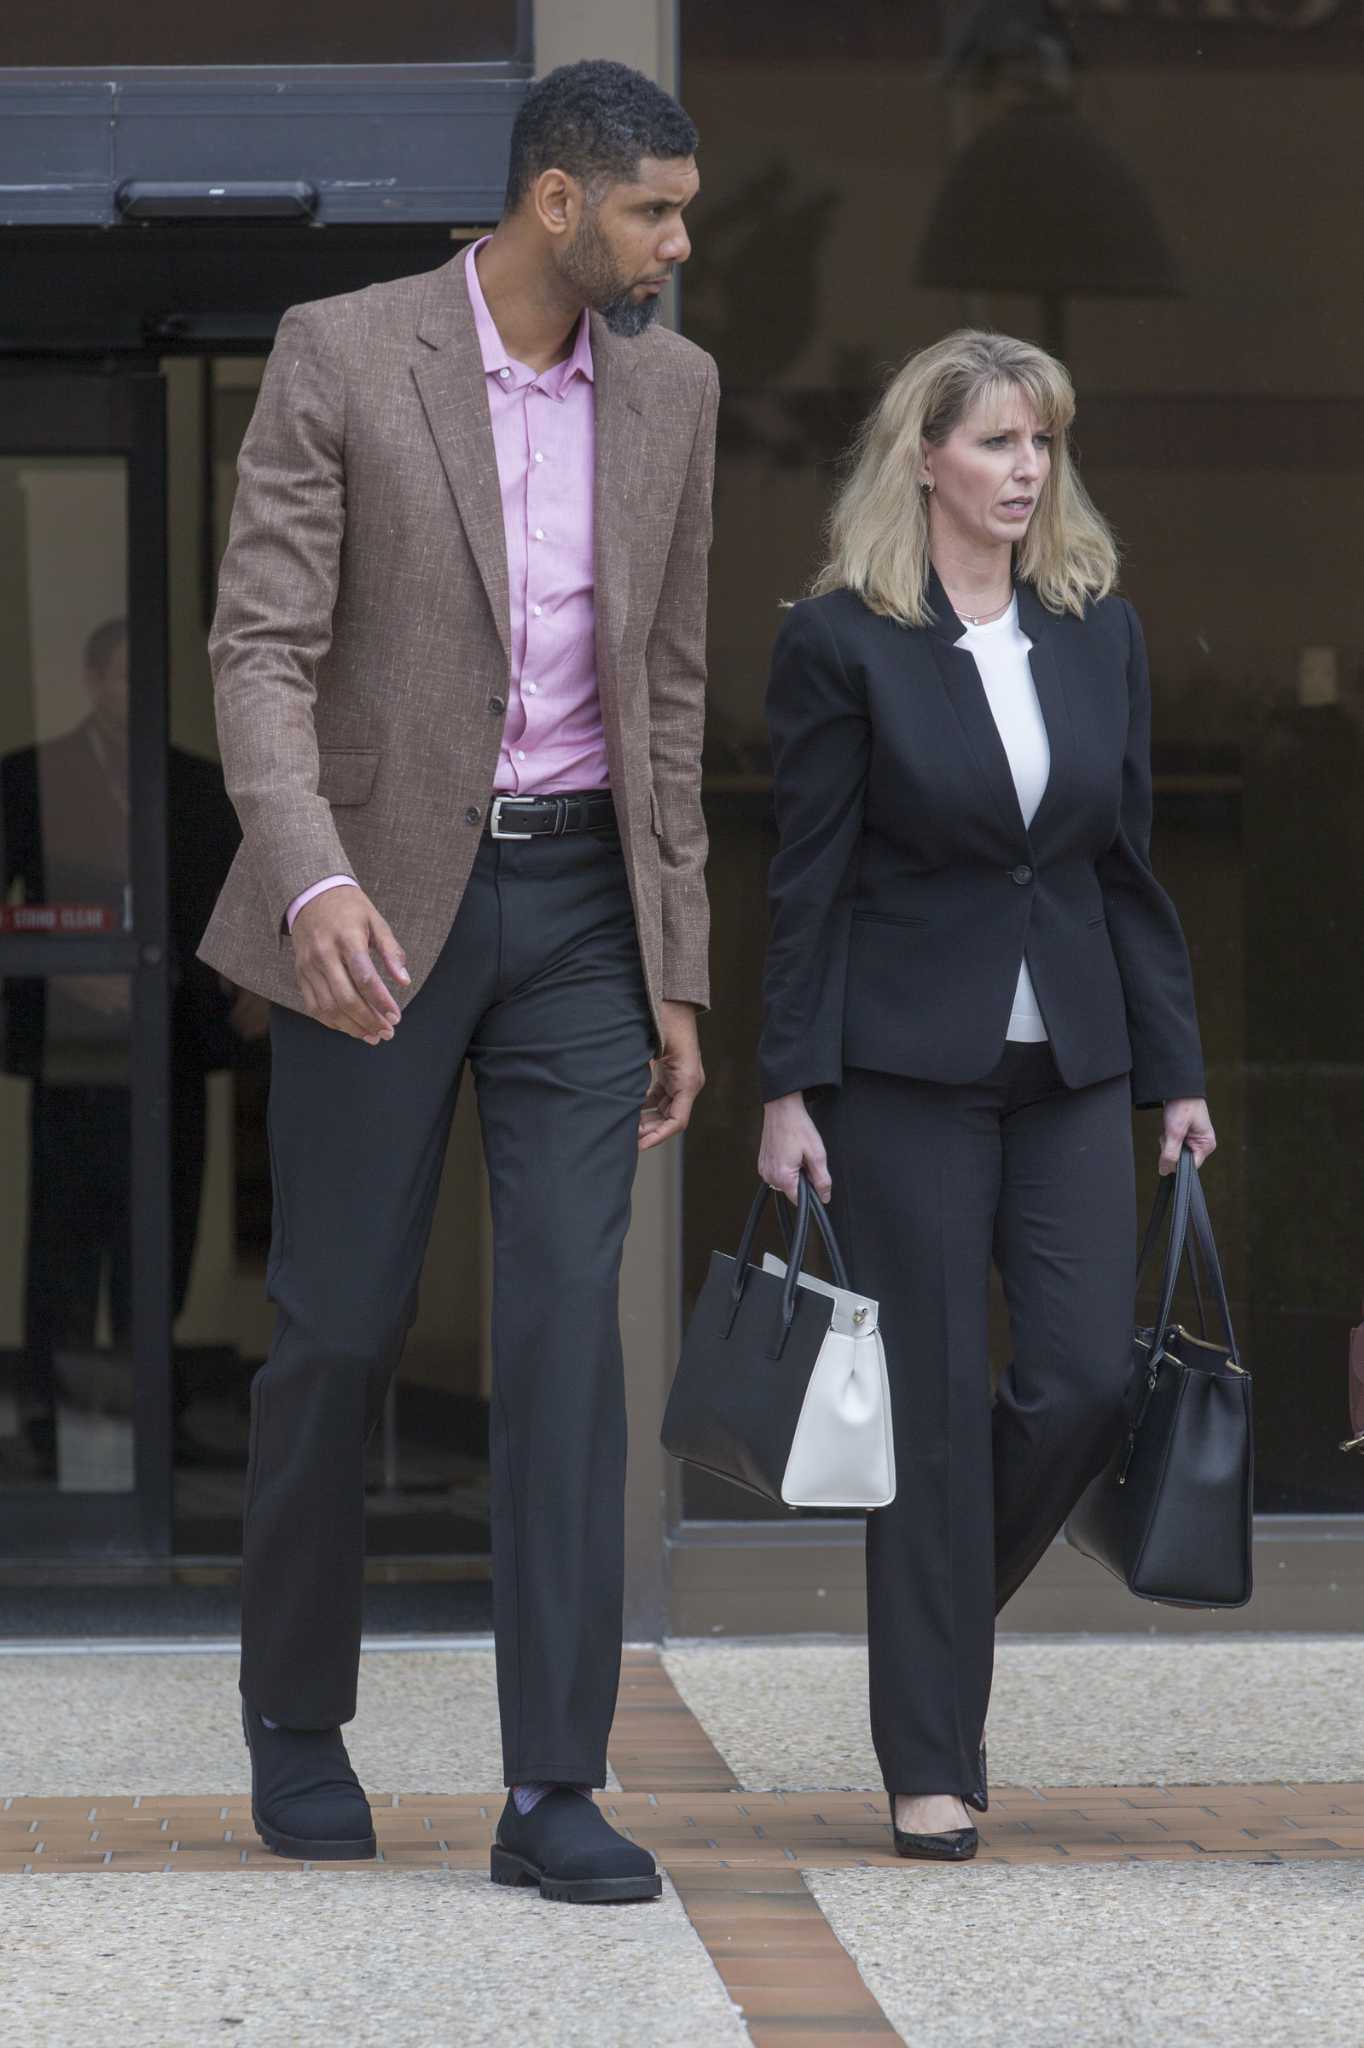 Tim Duncan Files Lawsuit Against Former Financial Adviser: Details